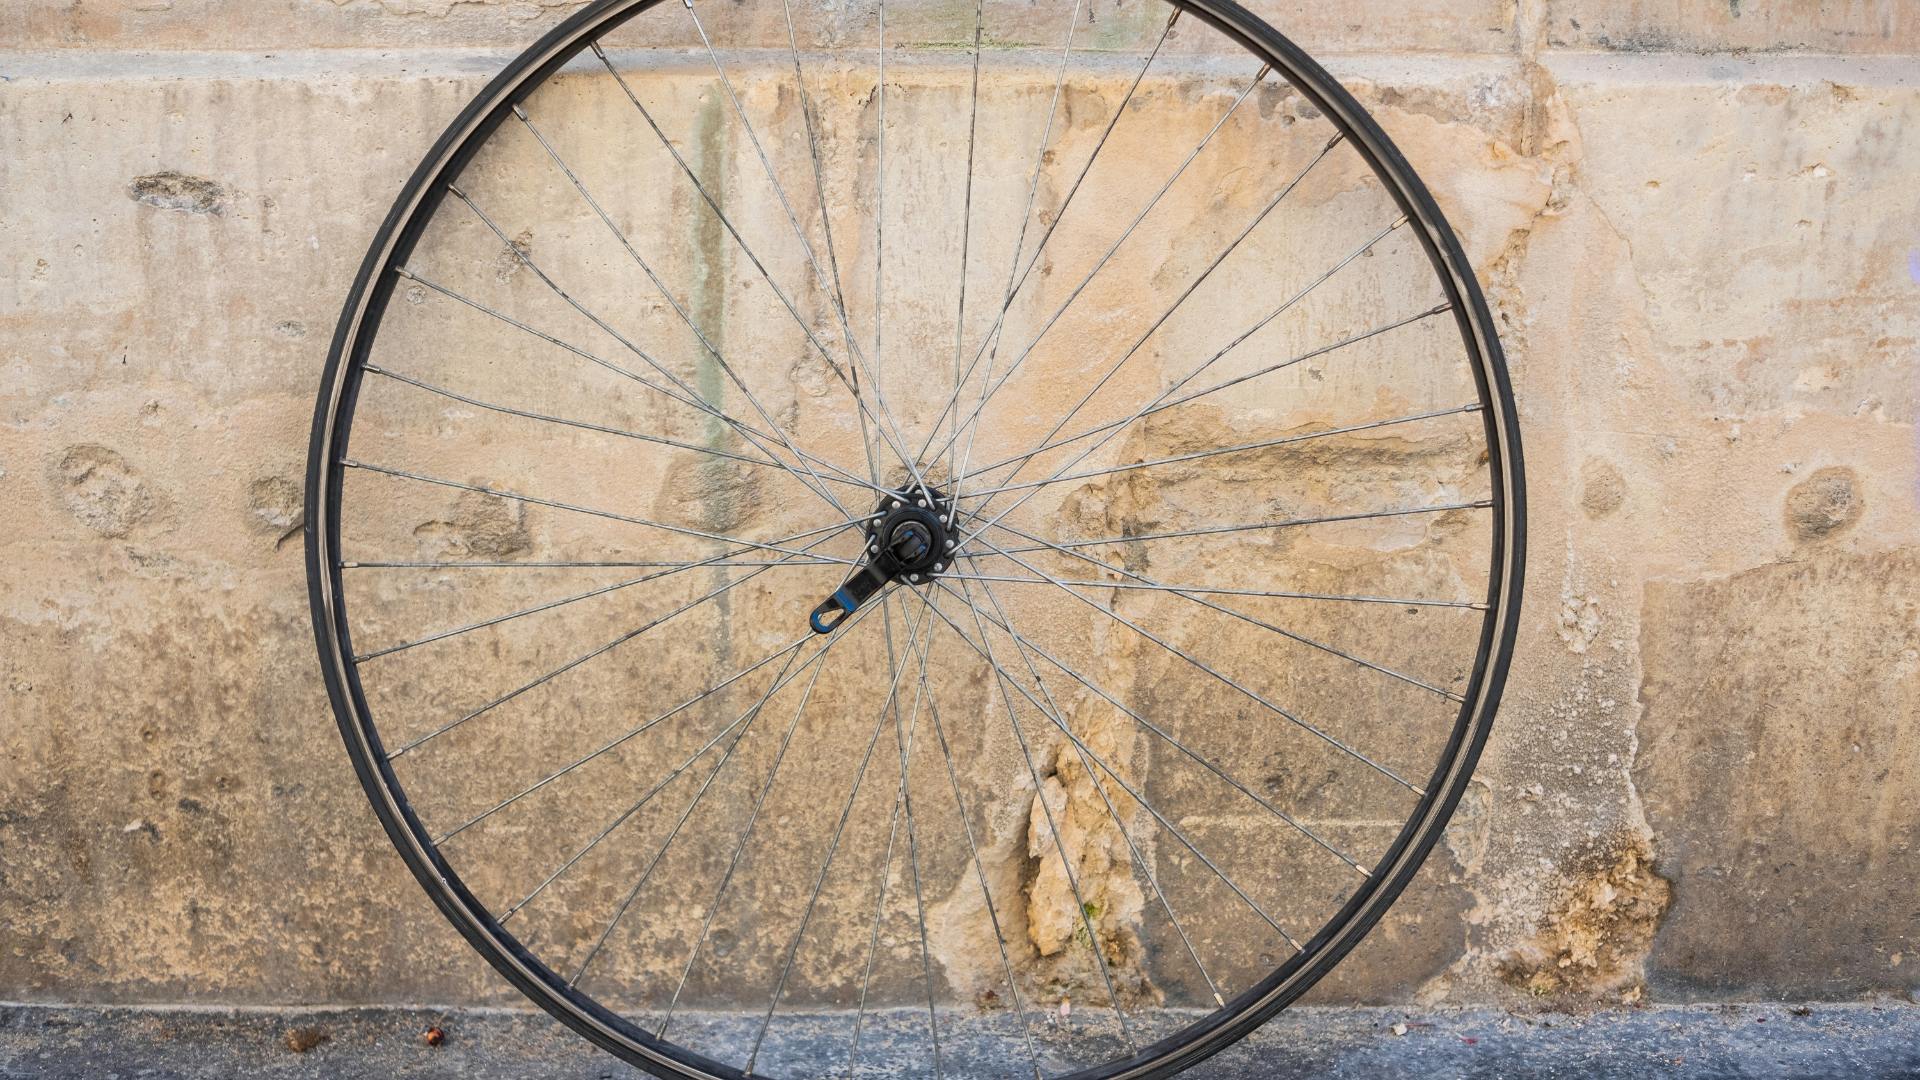 Sonhar com Roda de Bicicleta: Qual é o Significado?